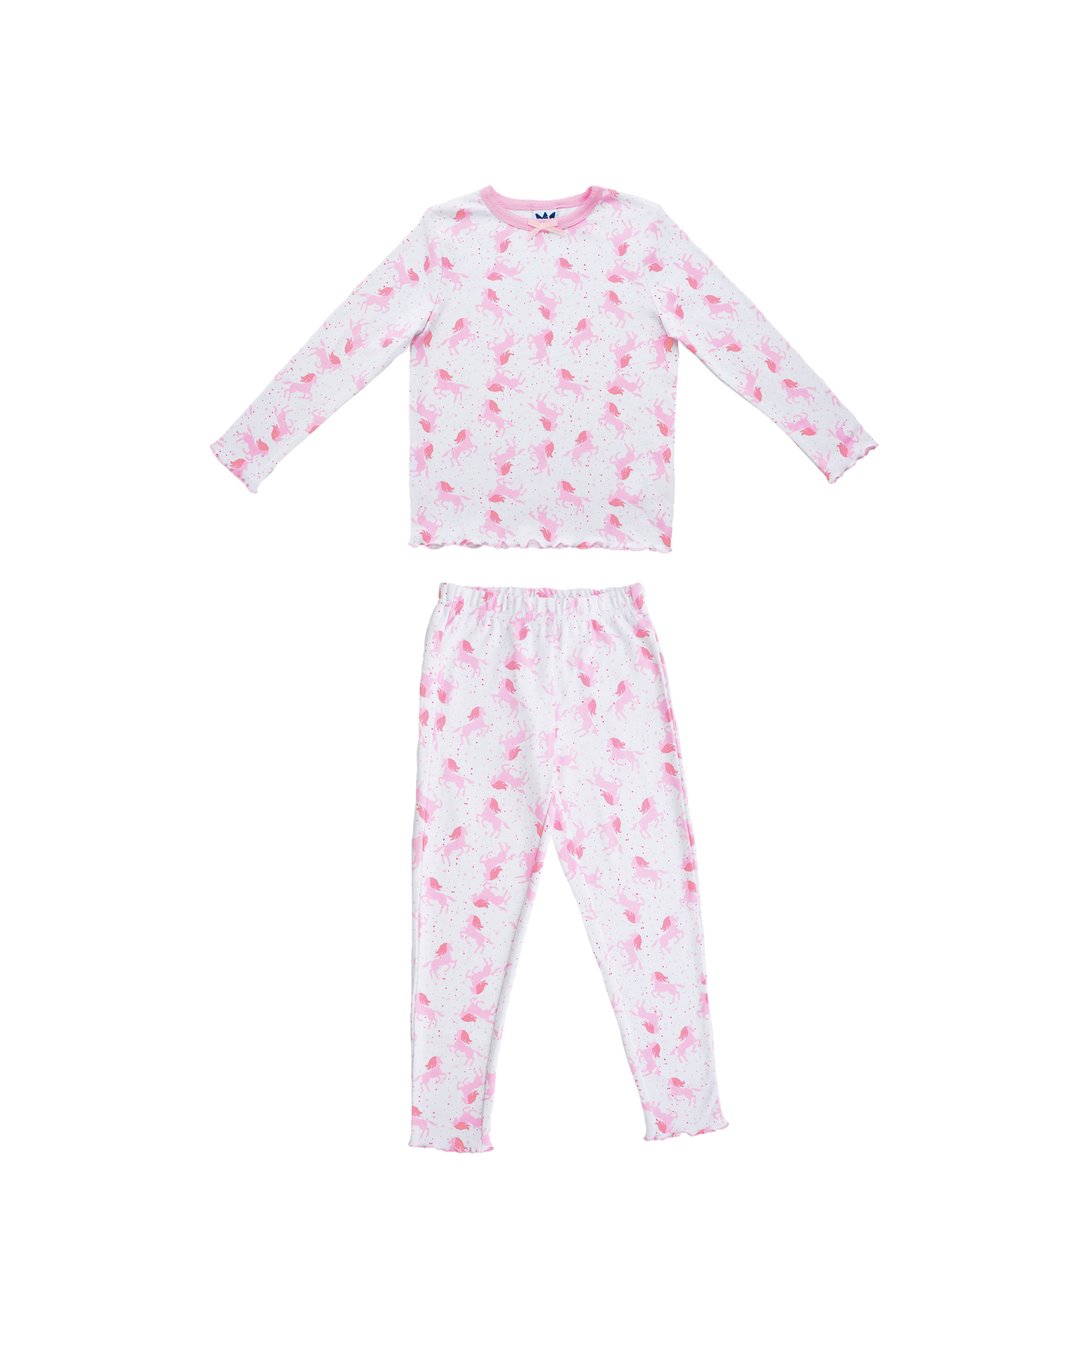 Pijama blanca con unicornios rosados